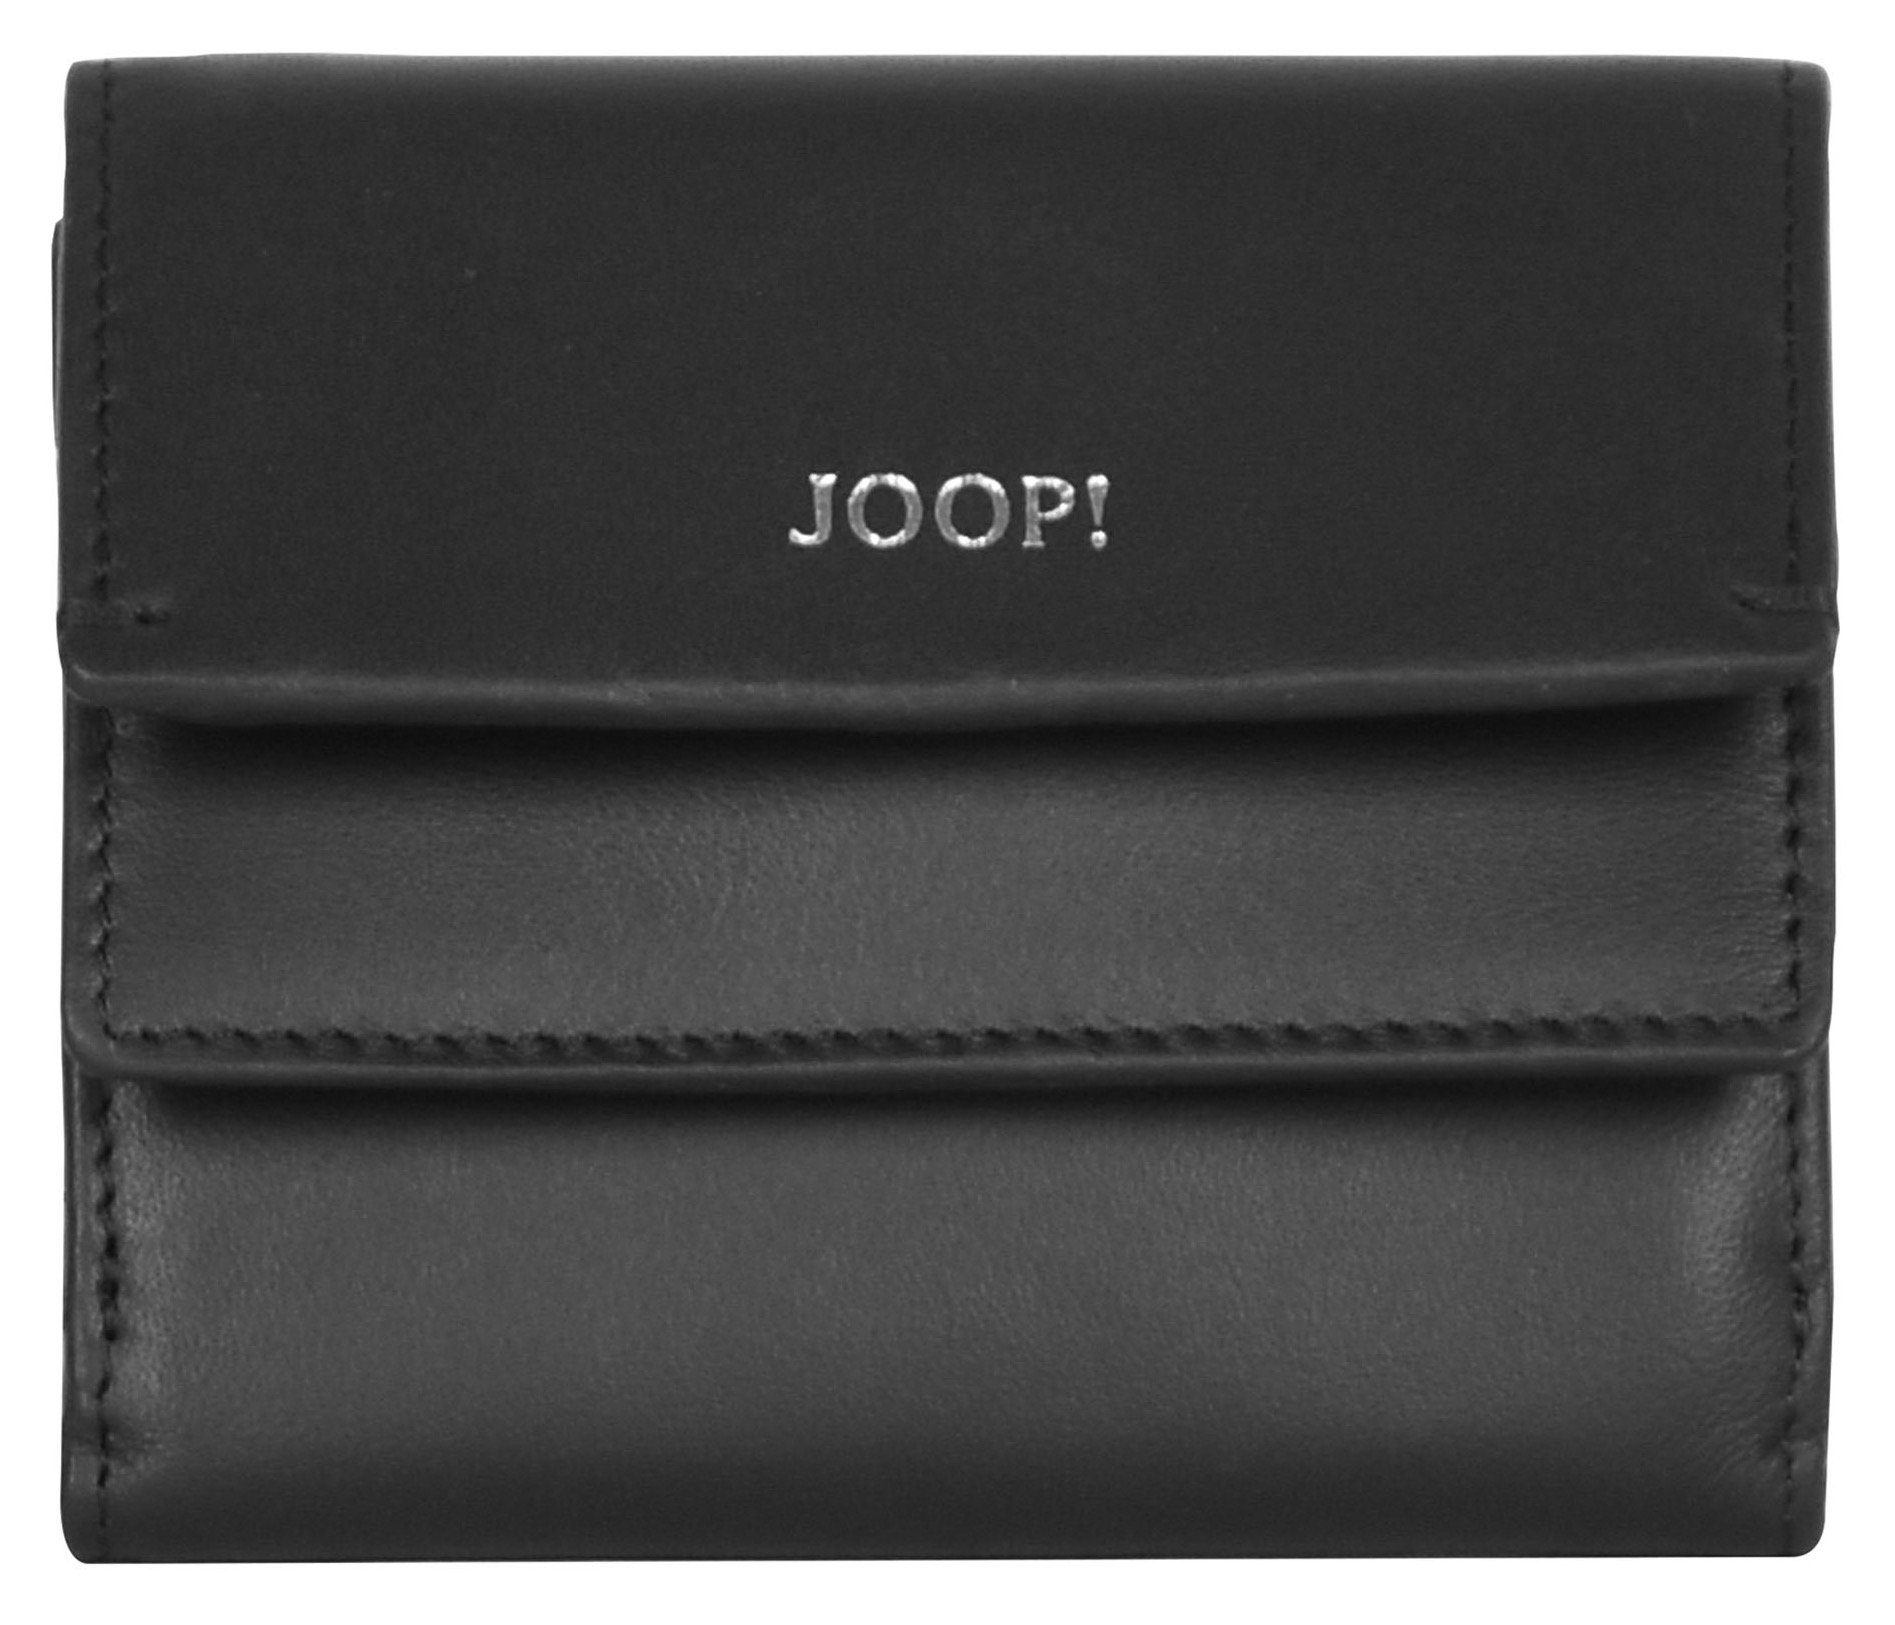 Joop! Geldbörse sofisticato 1.0 lina purse sh5f, in schlichtem Design schwarz